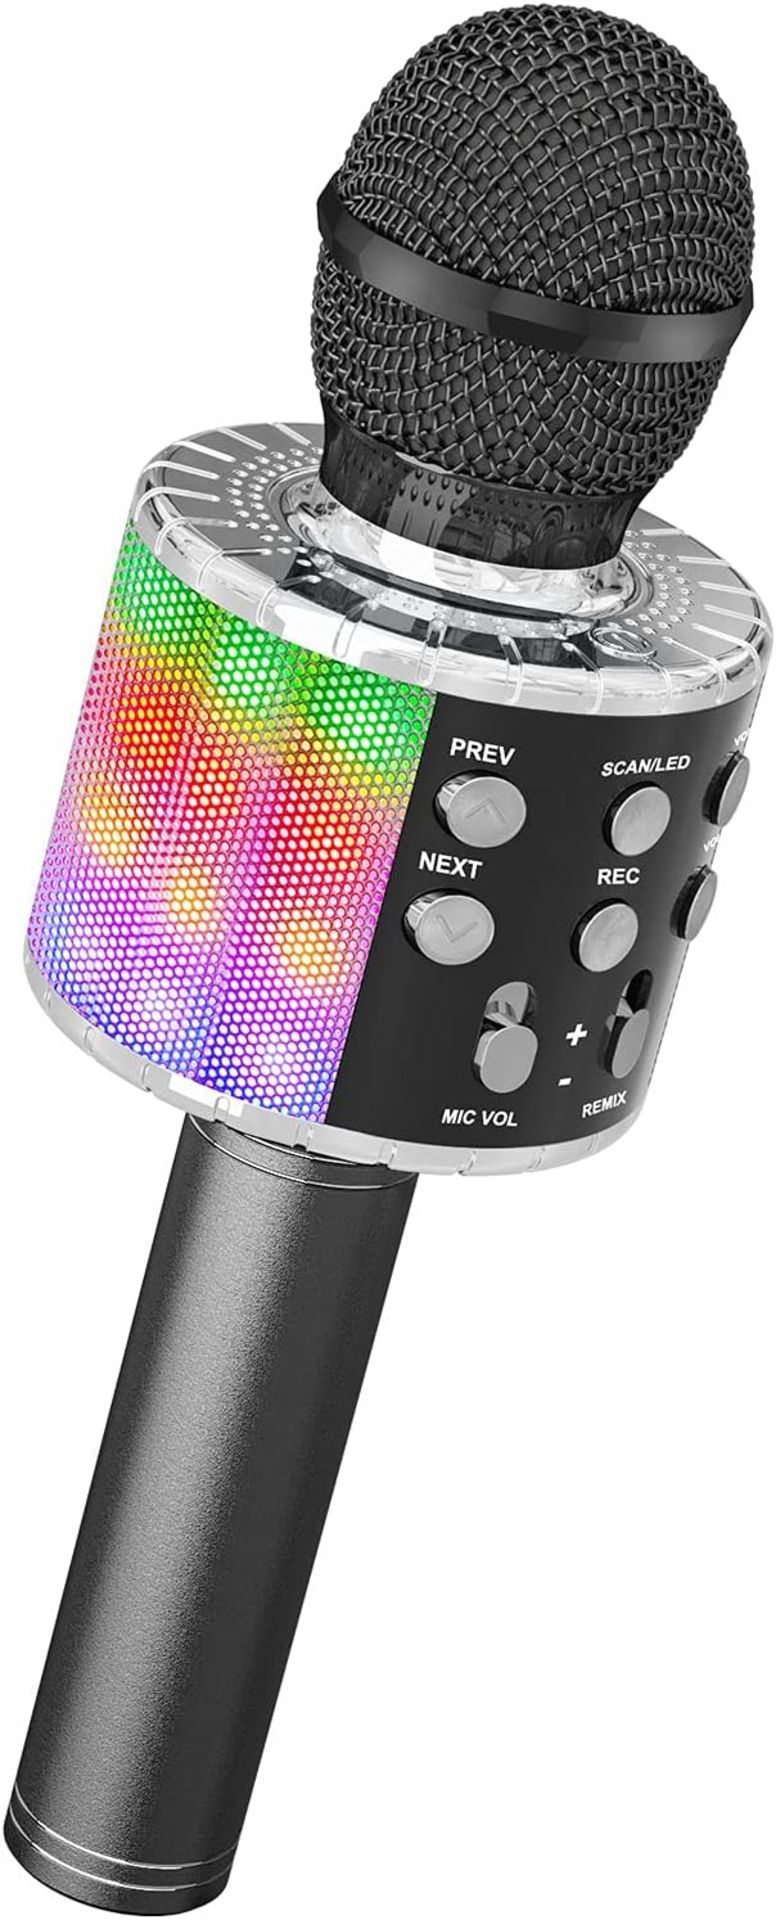 RRP £90 Lot of 6 x Karaoke Wireless Microphone, 4 in 1 Handheld Bluetooth Microphones Speaker